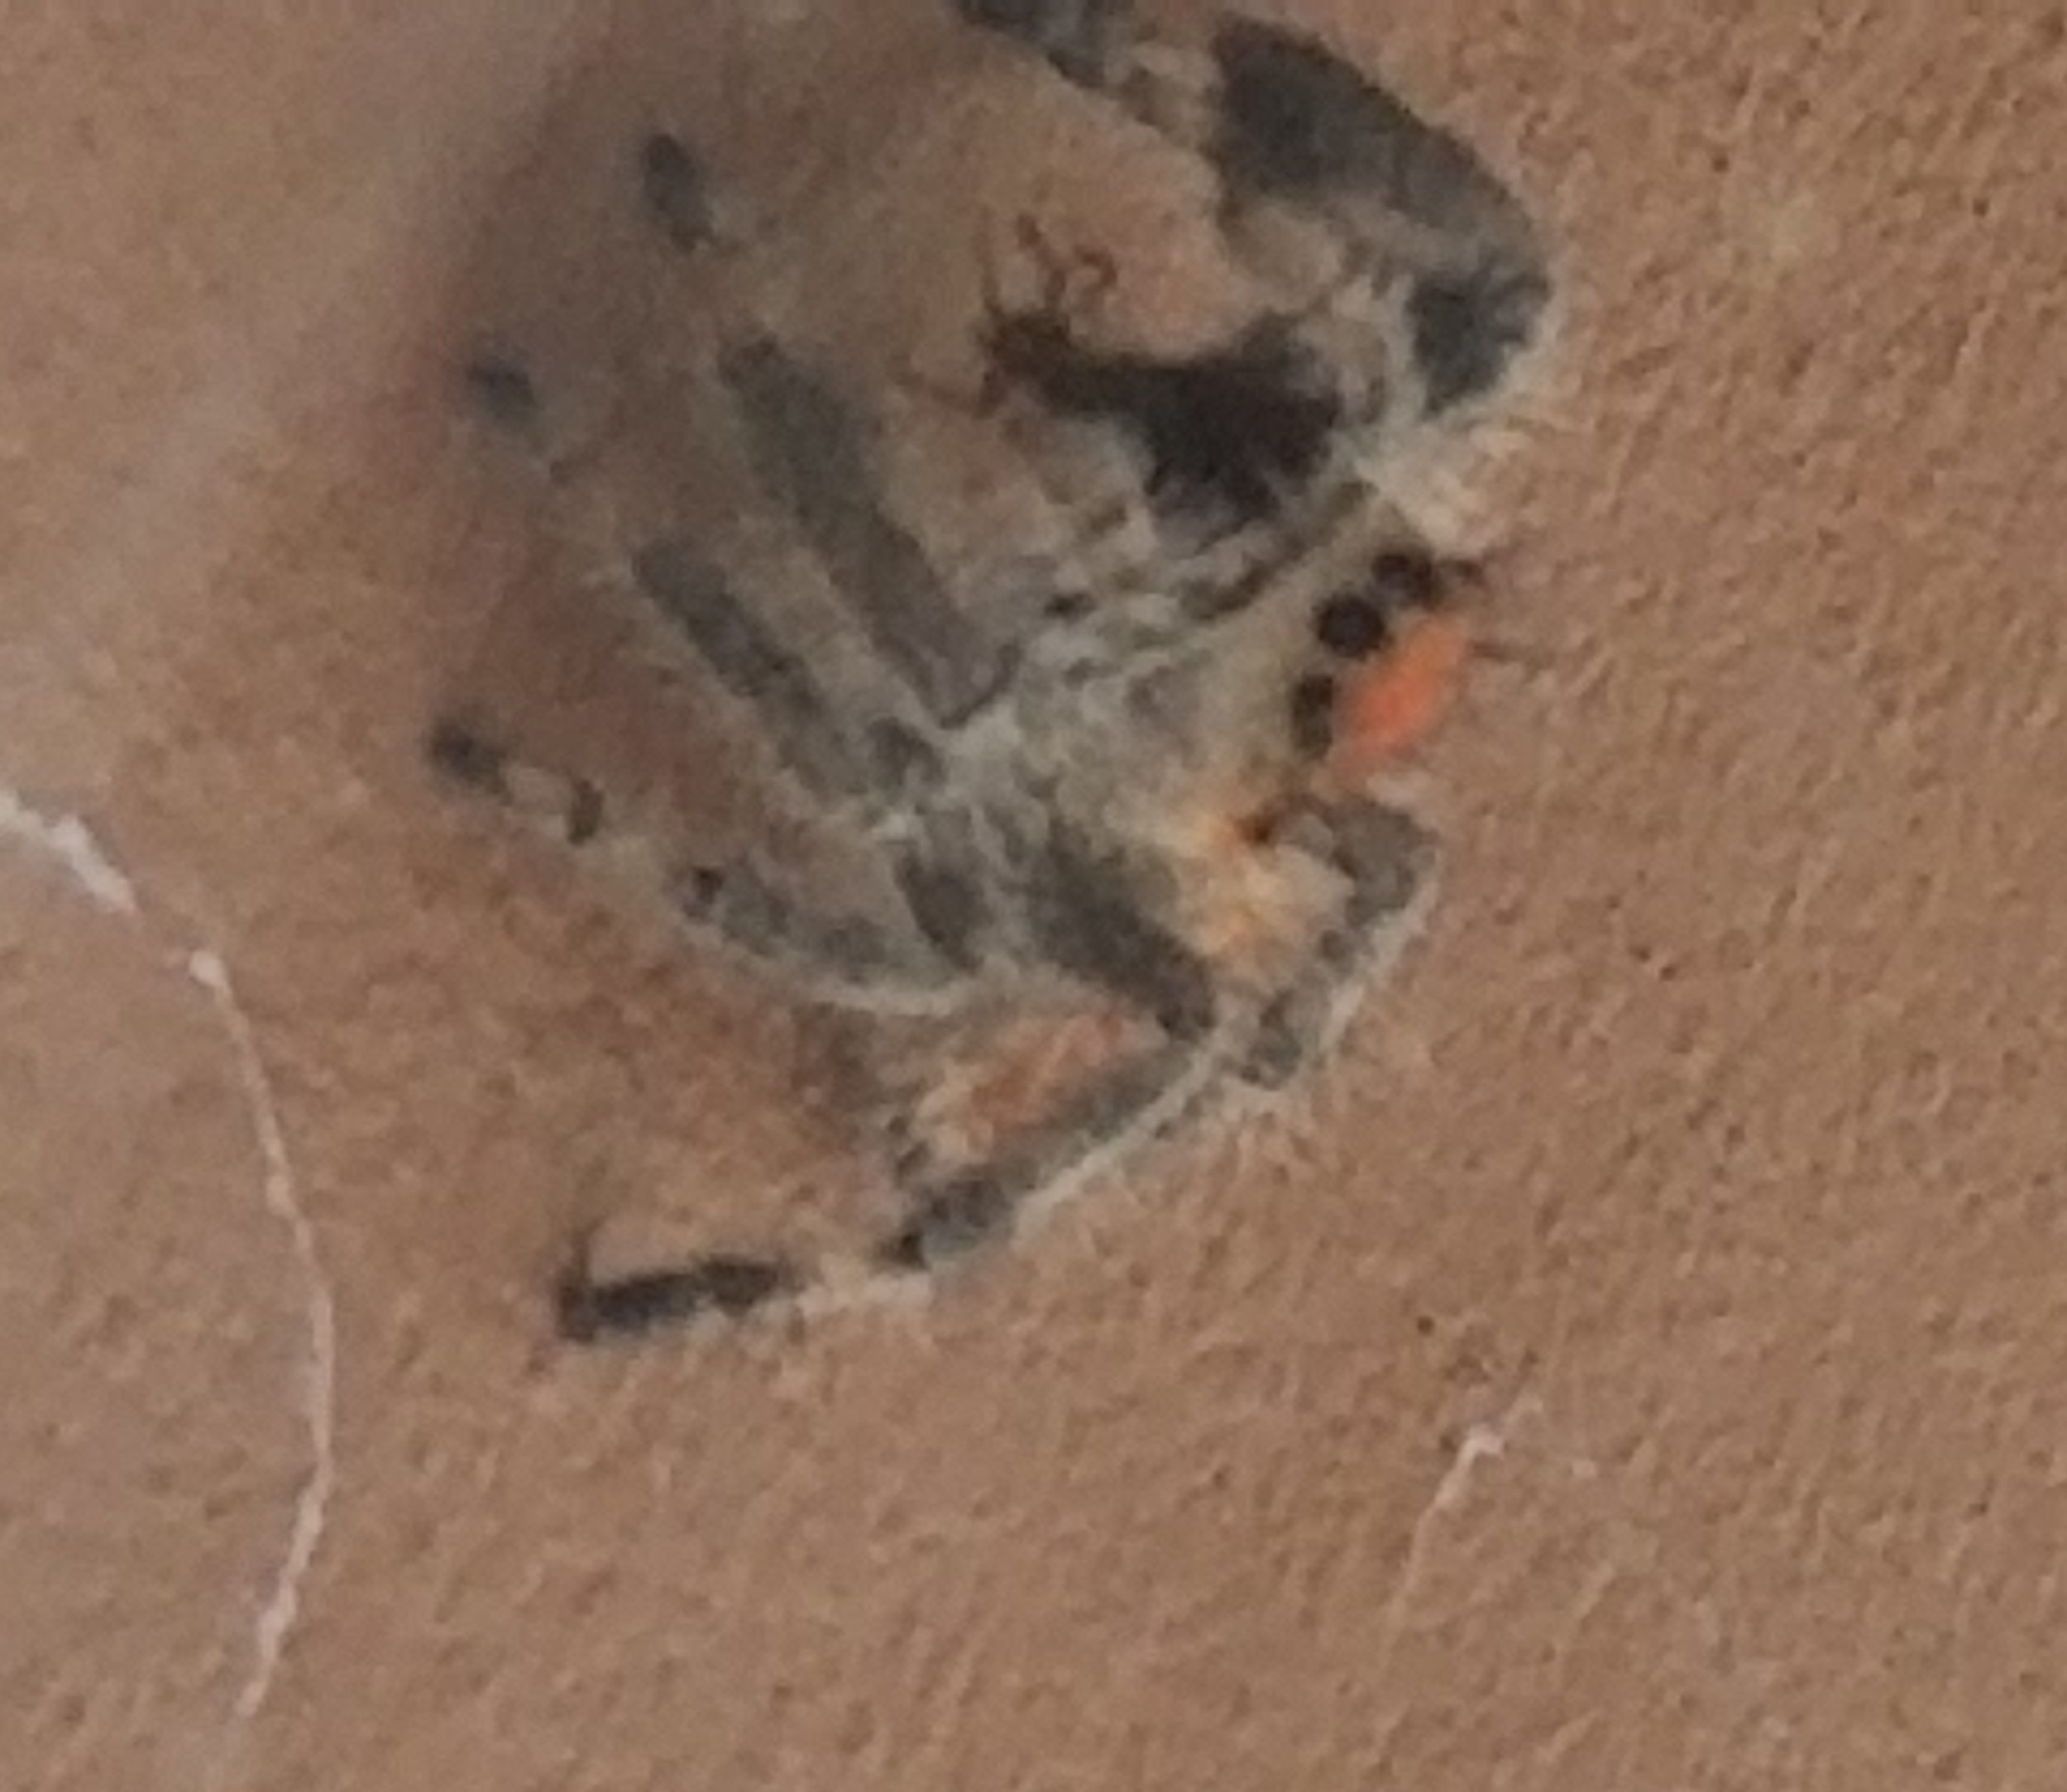 Picture of Phidippus regius (Regal Jumping Spider) - Eyes